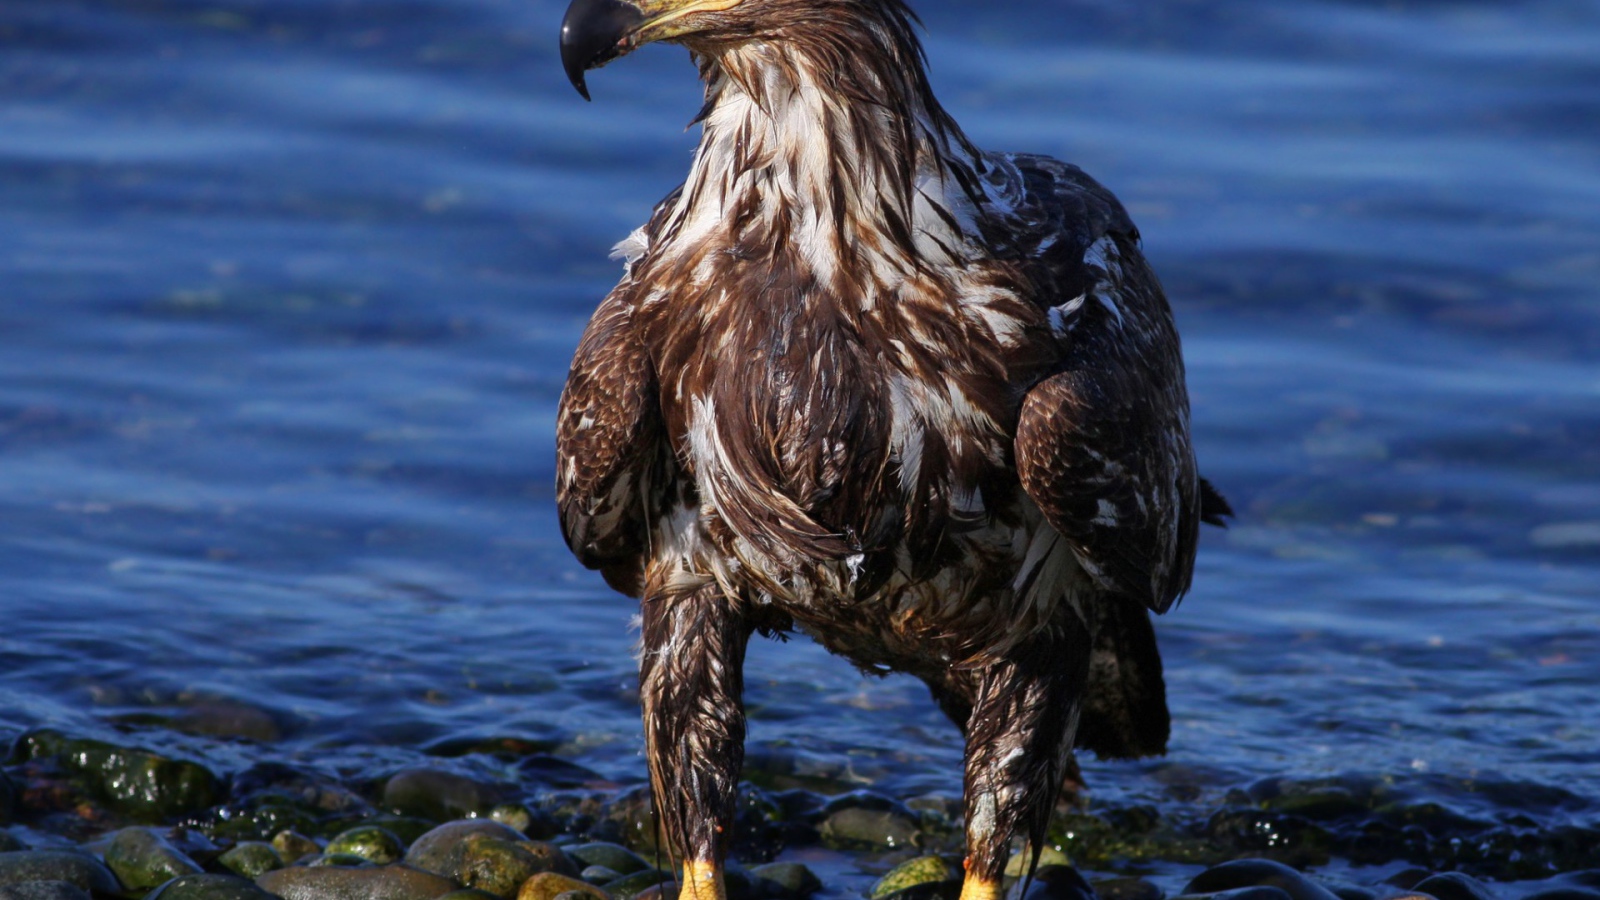 Eagle on the sea shore